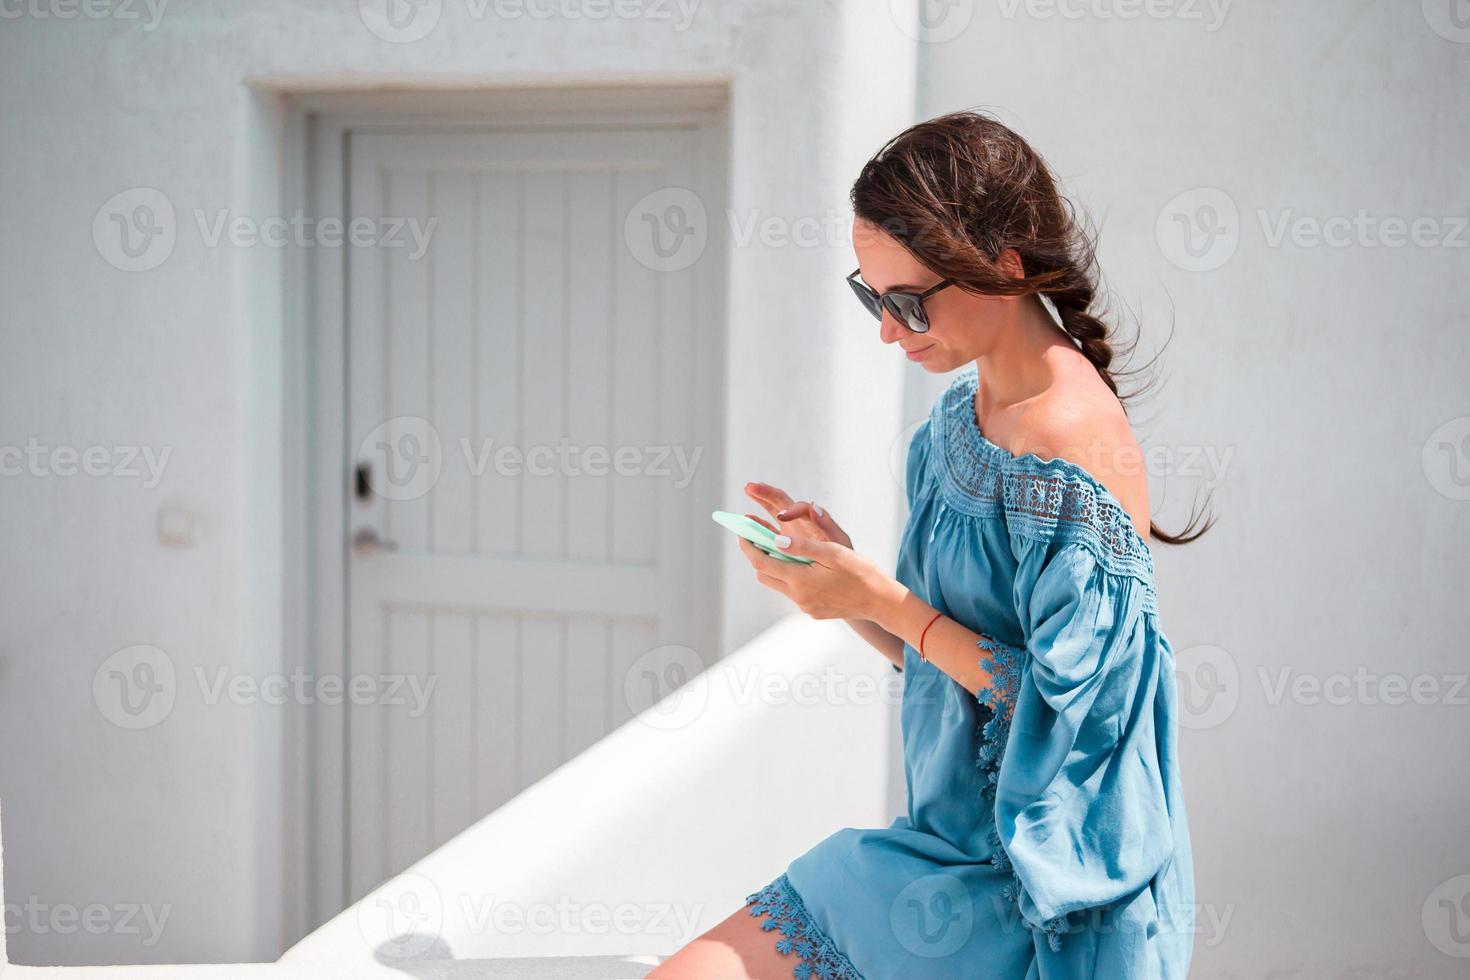 kvinna med mobiltelefon utomhus på de gata. turist använder sig av mobil smartphone. foto